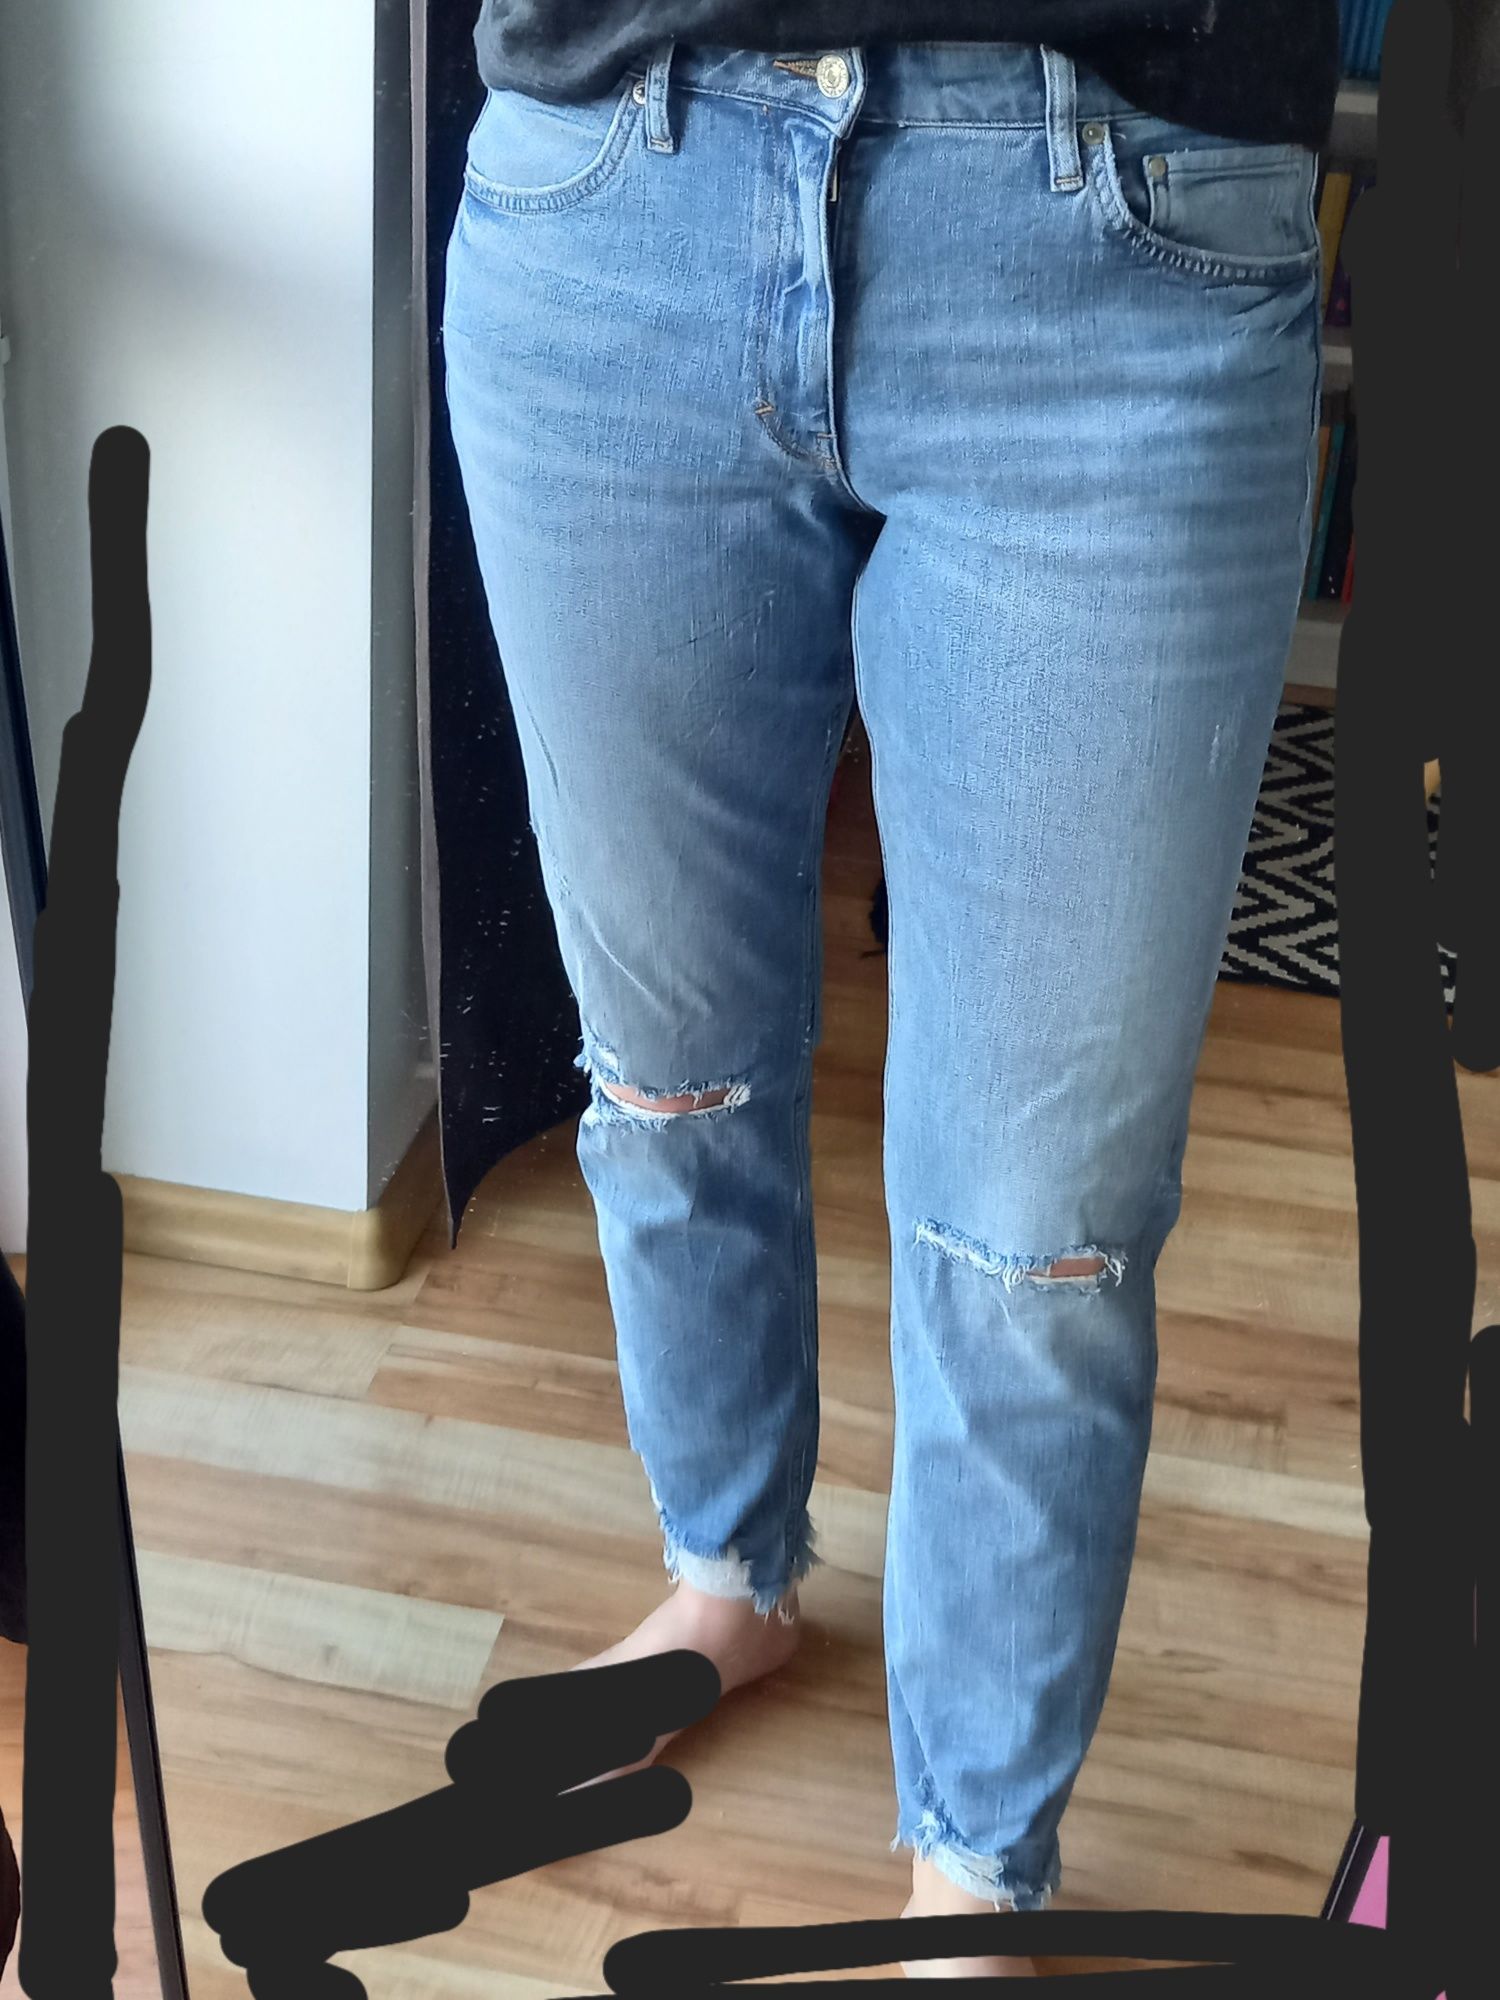 Dżinsy model girlfriend, z dziurami, niebieskie, H&M, rozmiar 42